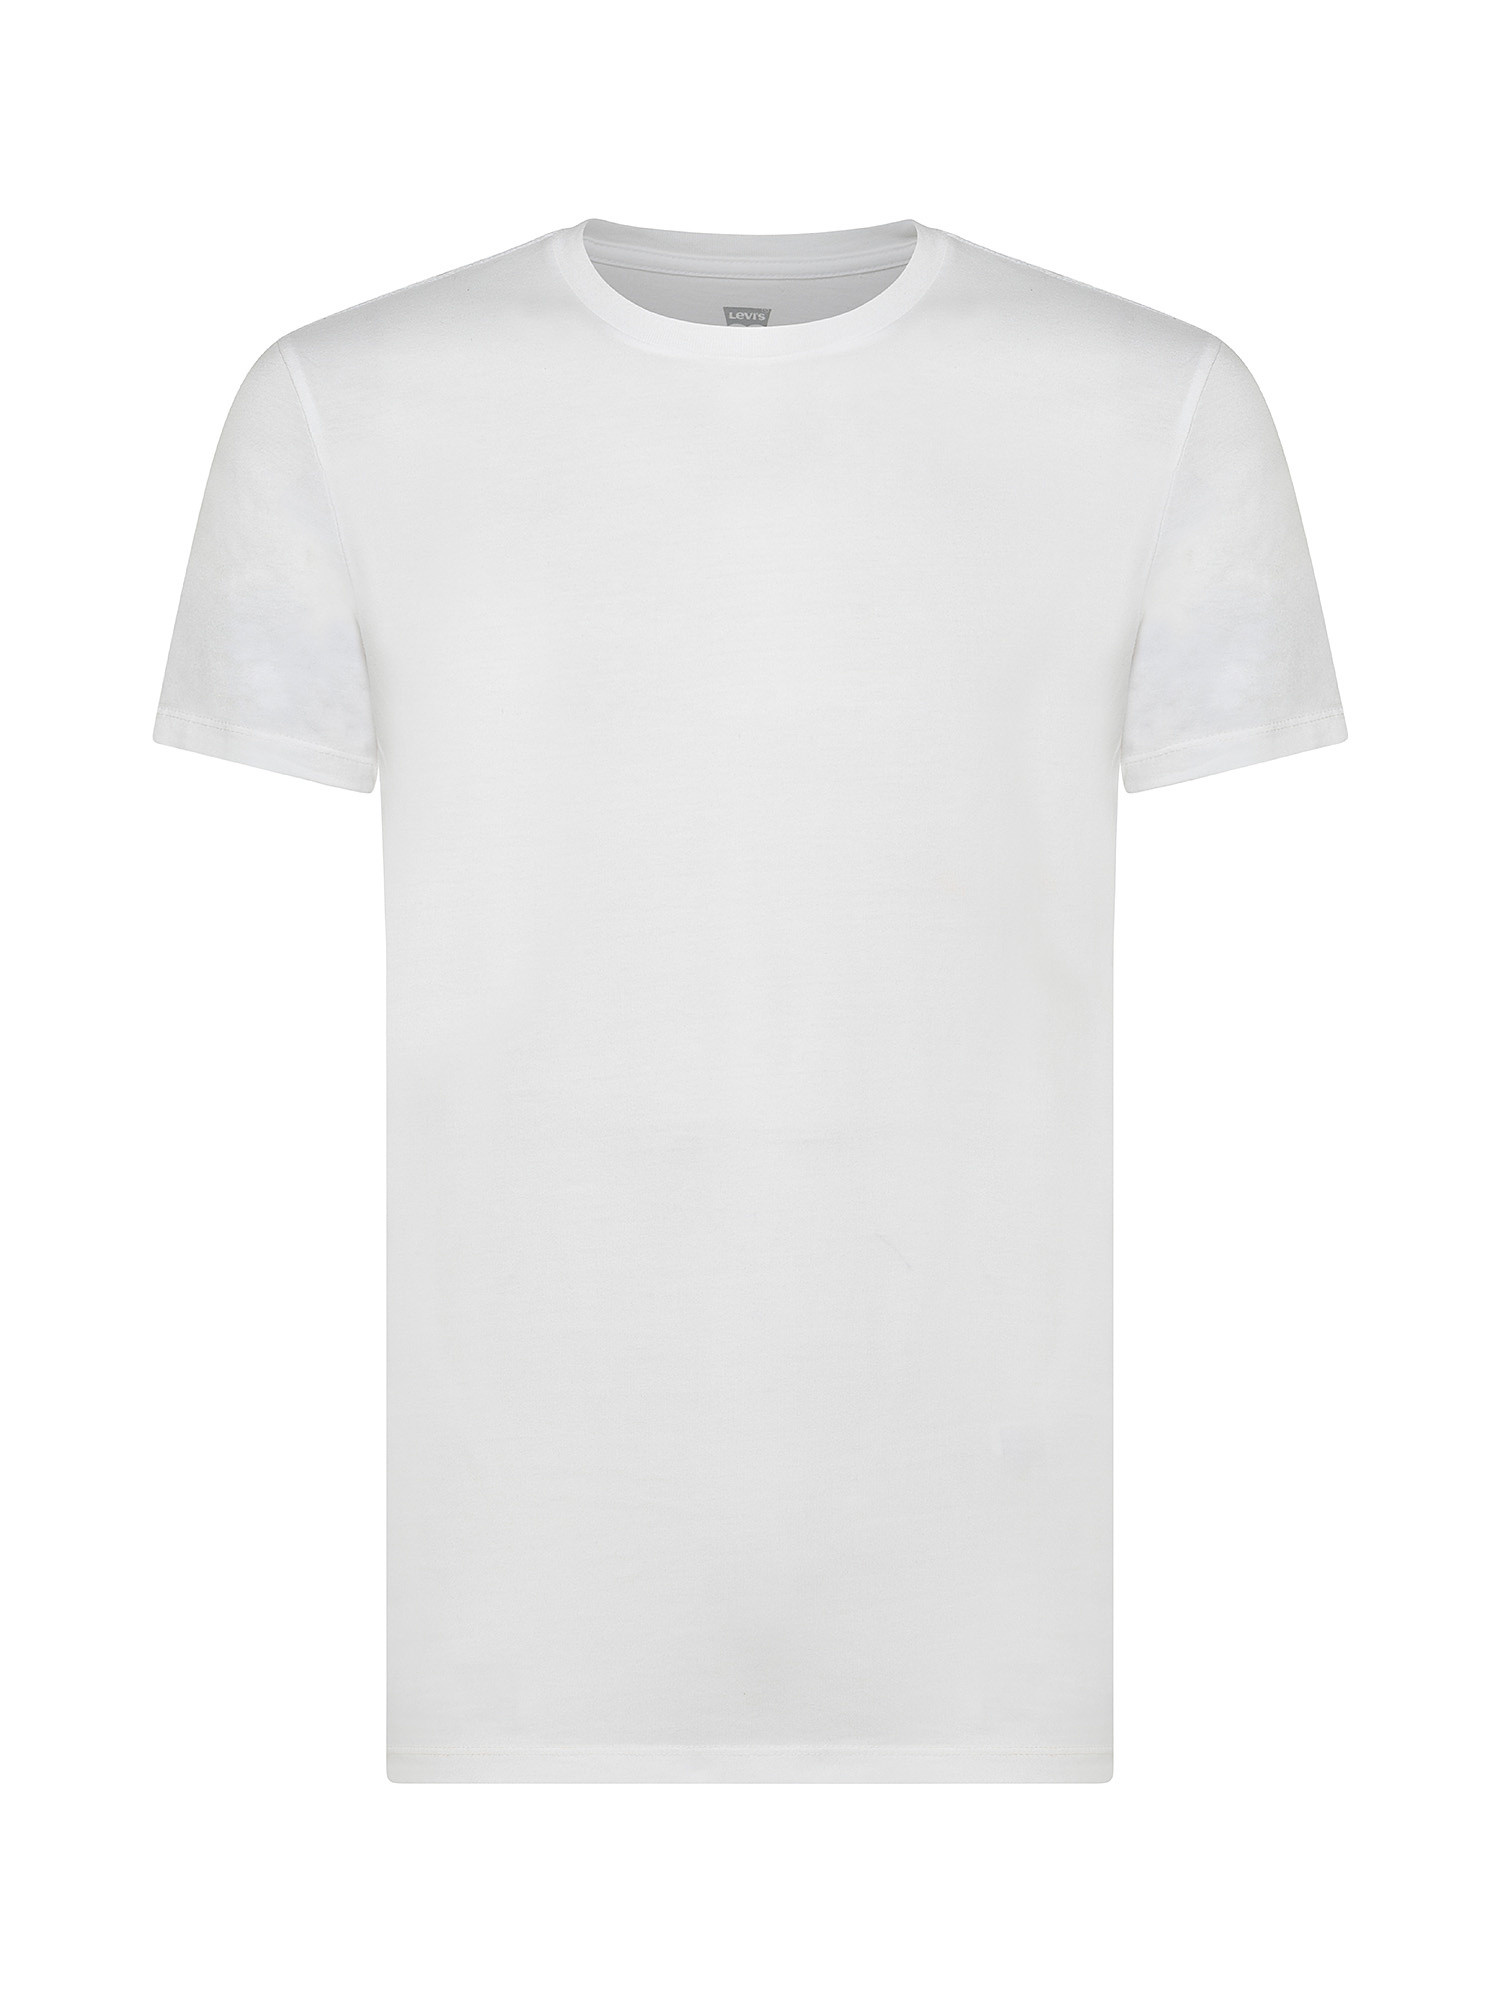 T-shirt a tinta unita, Bianco, large image number 0